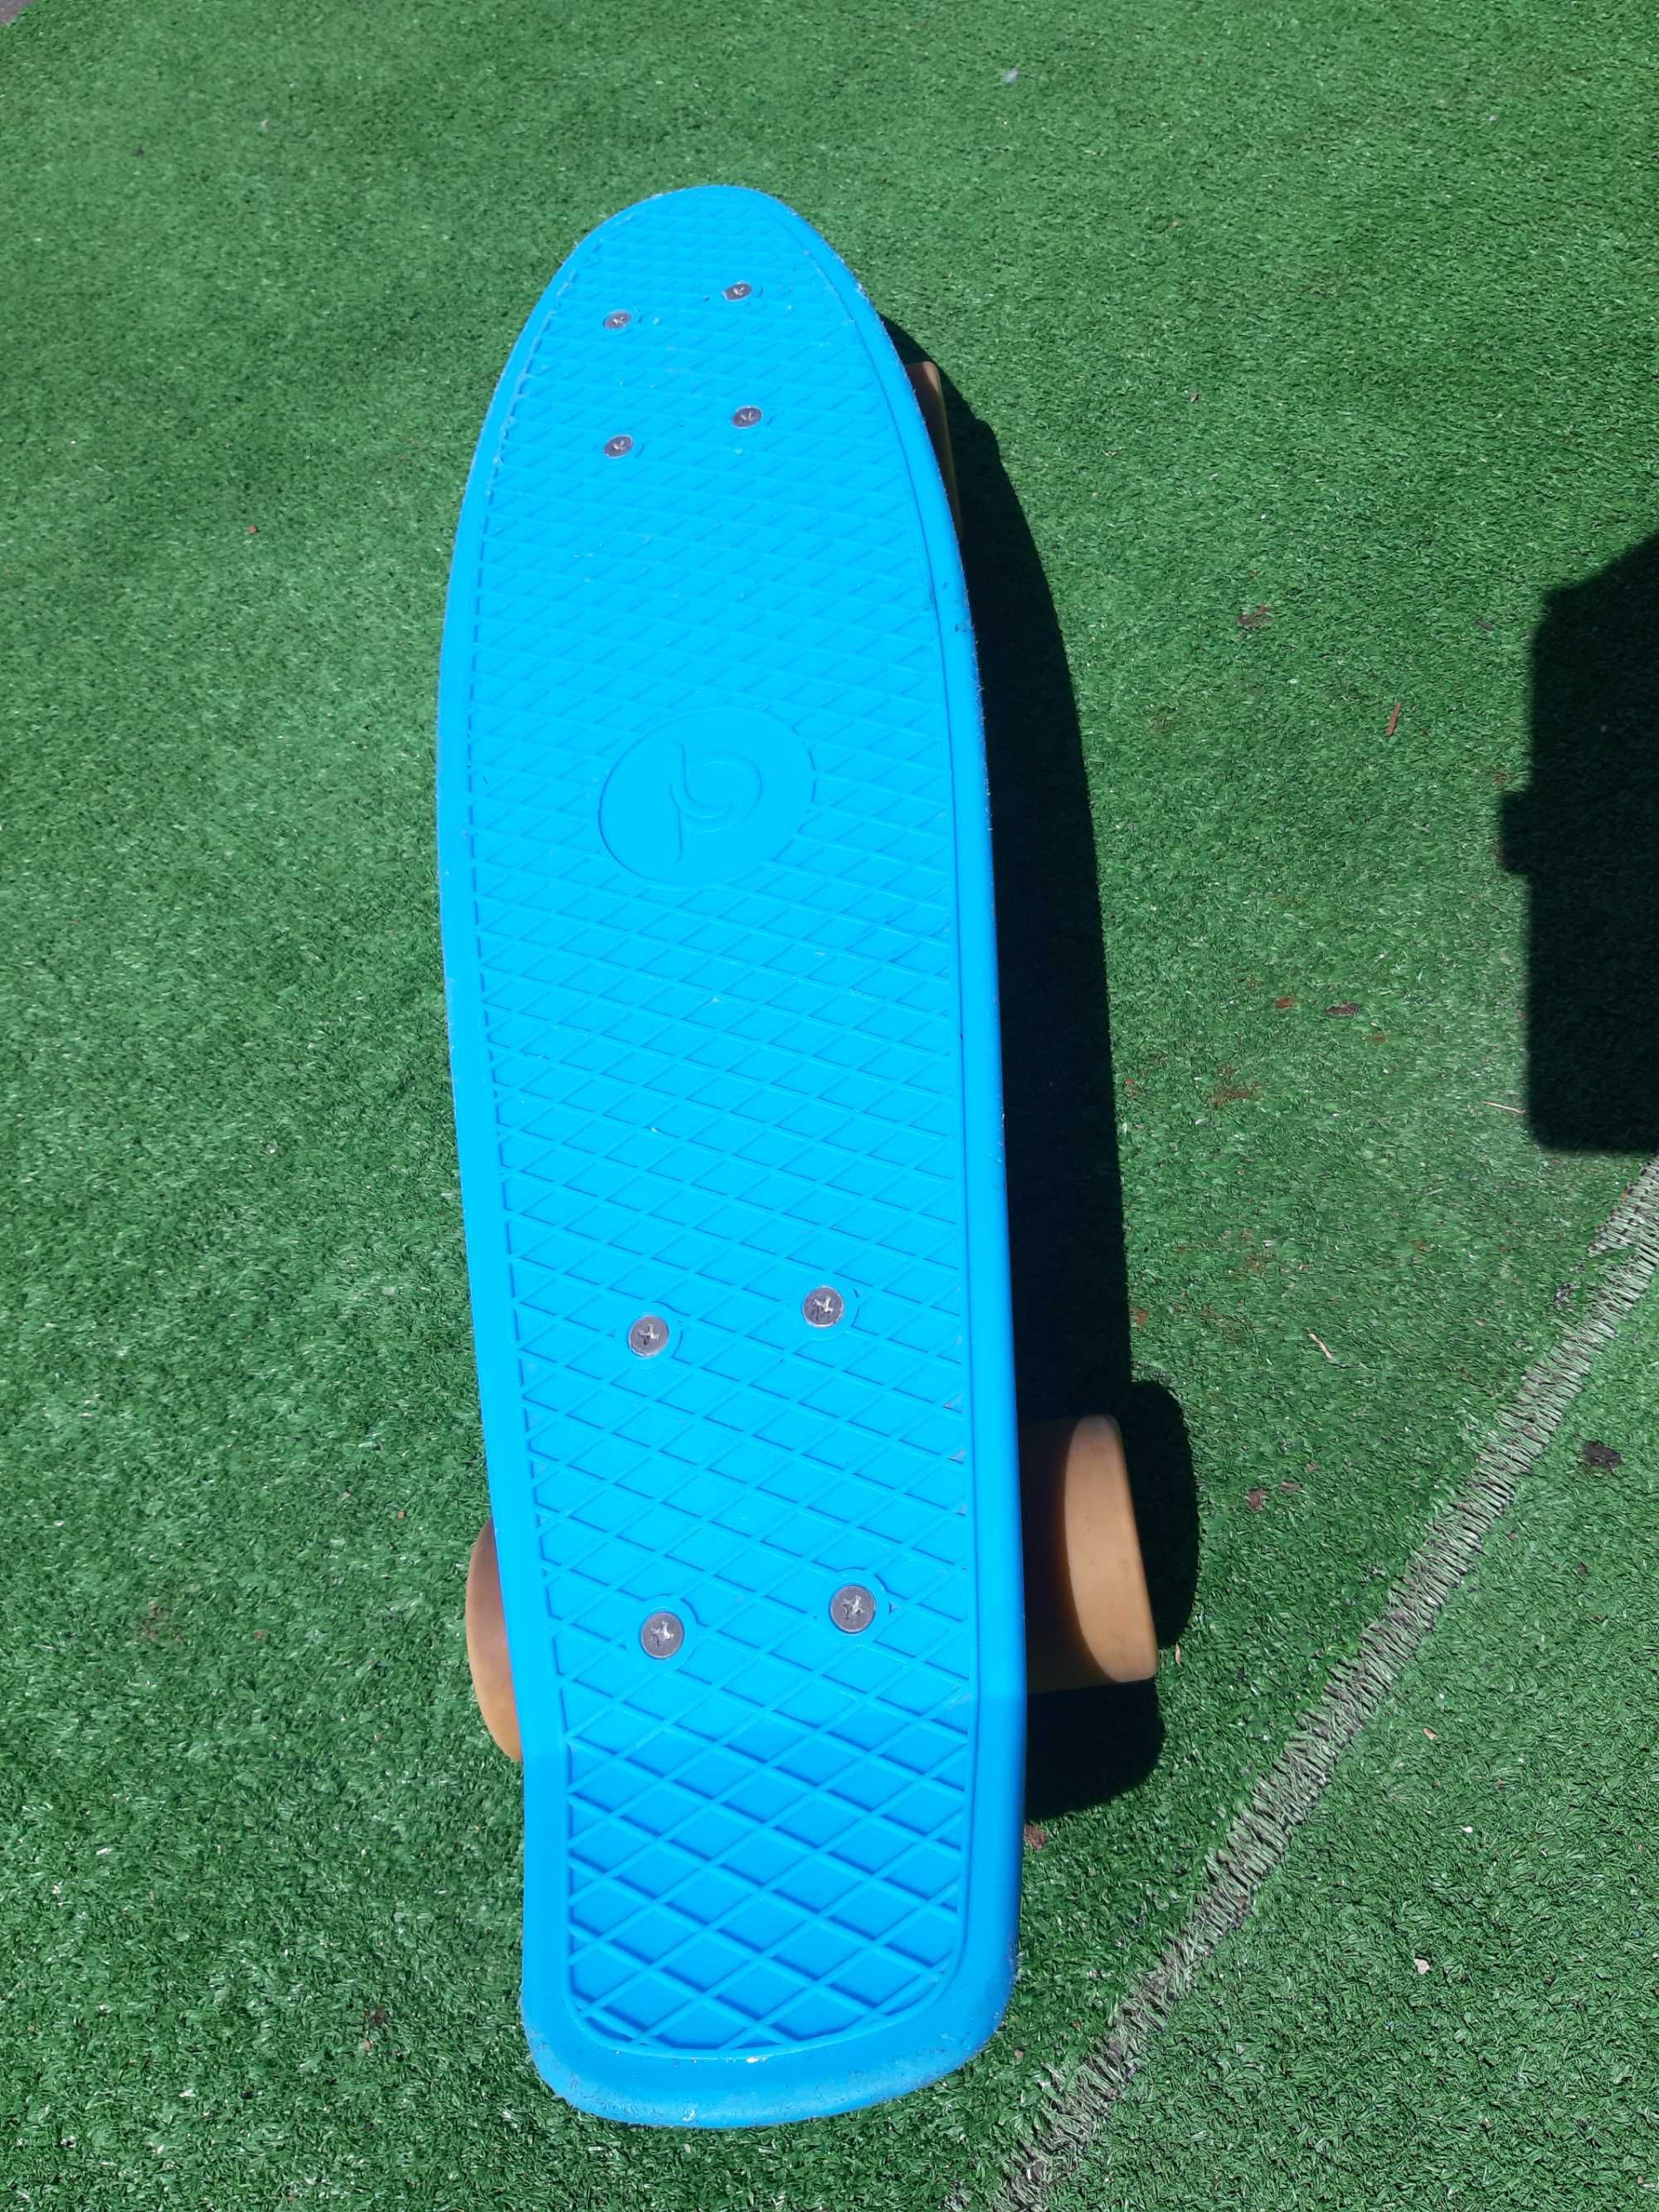 Skateboard pennyboard